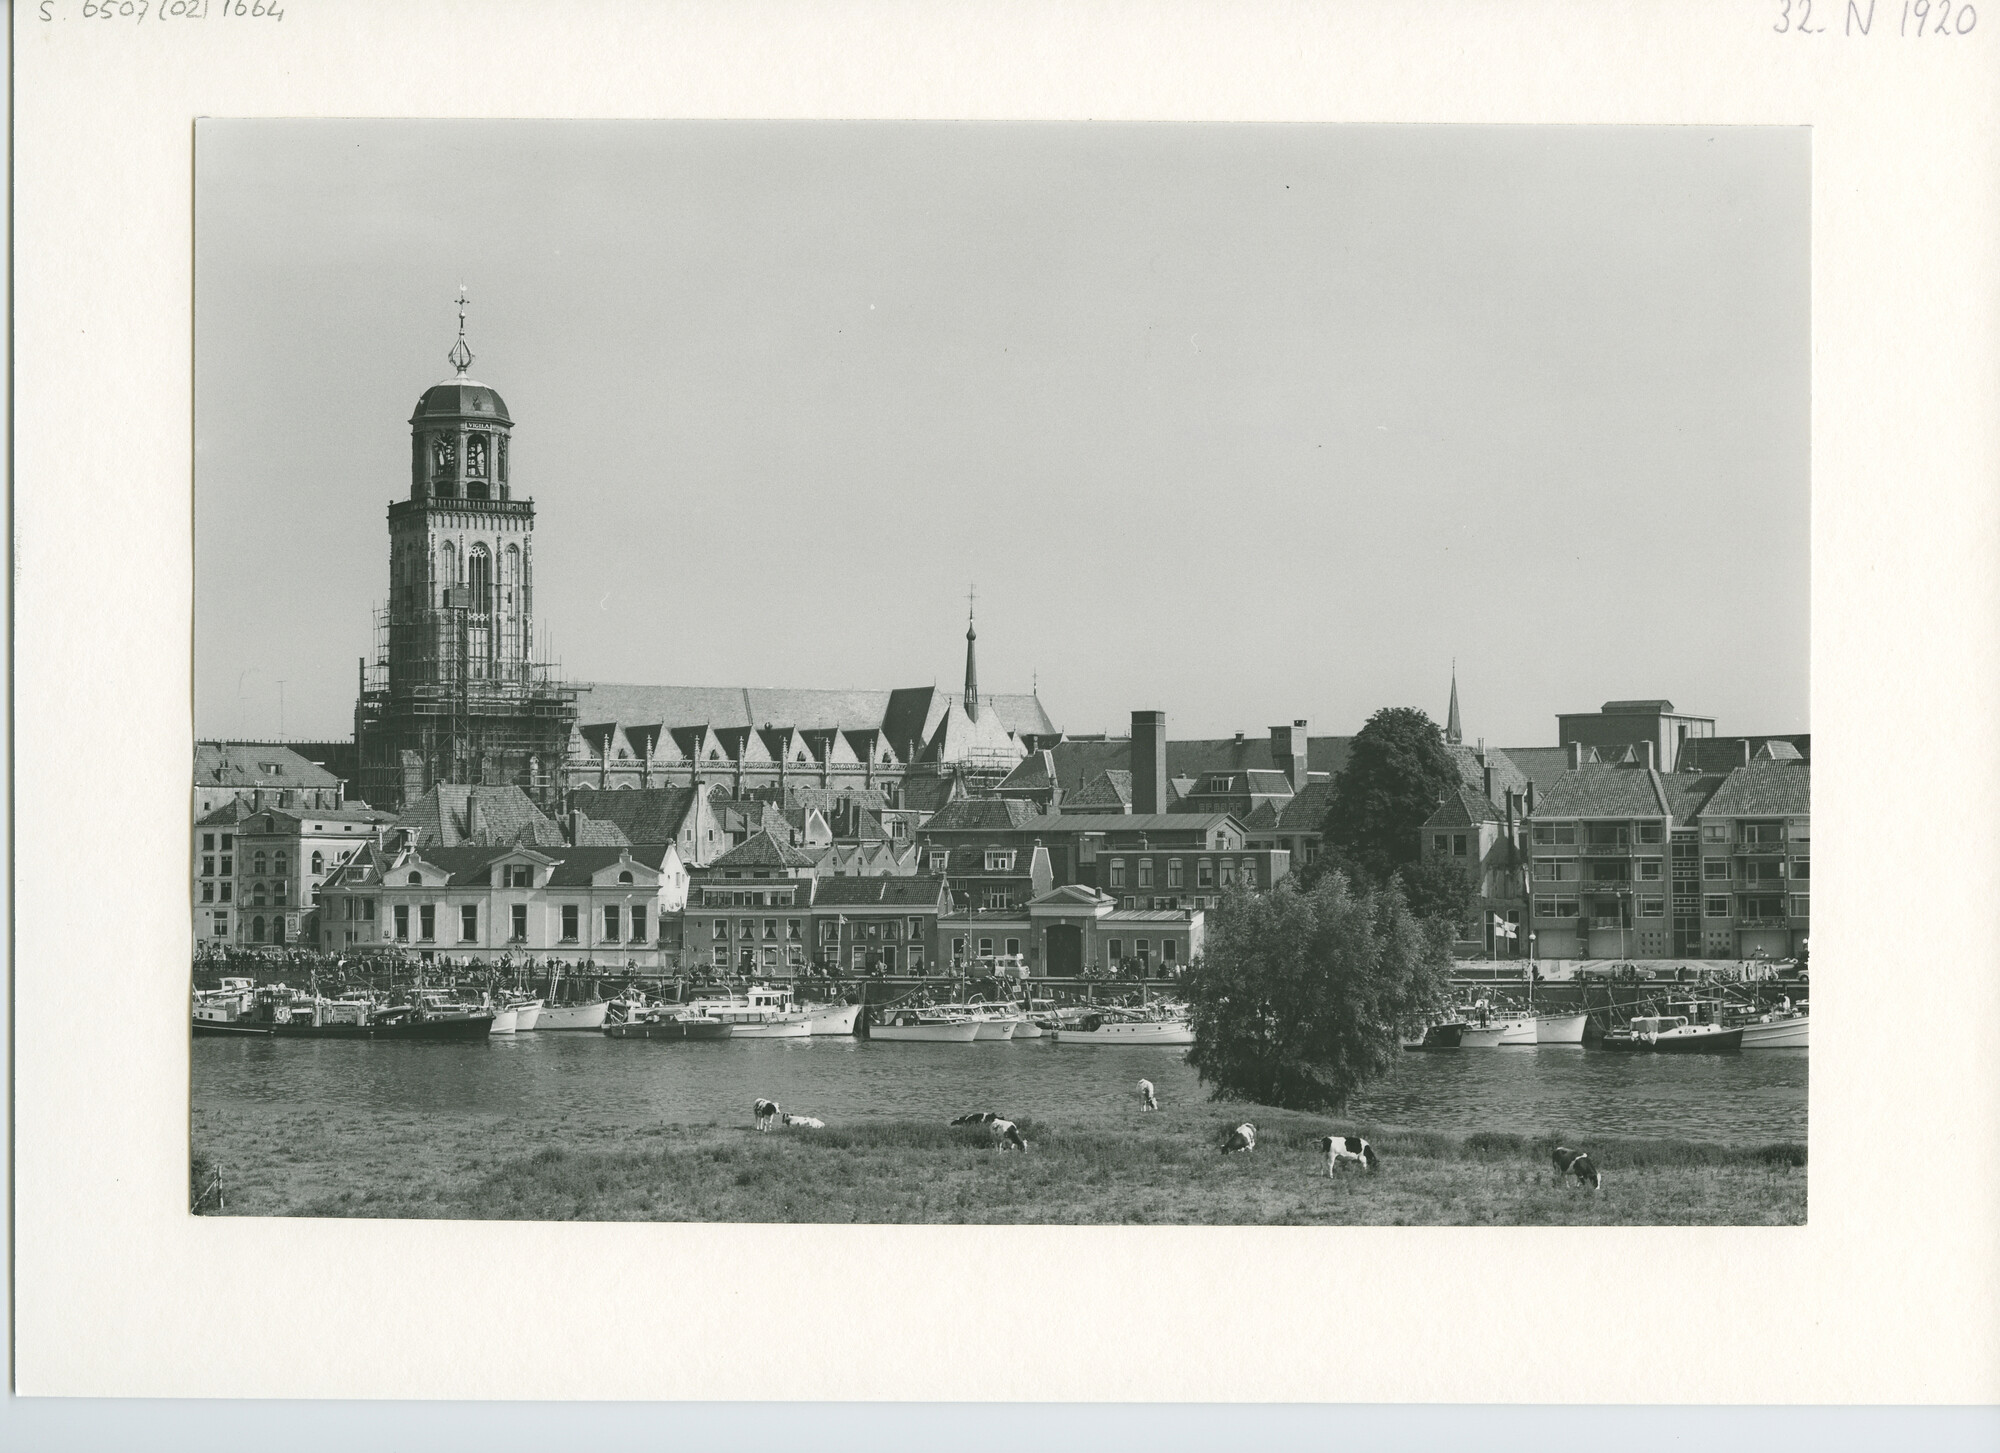 S.6507(02)1664.03; Zwart-wit foto van de deelnemers aan de Pavillon d'Or 1960 afgemeerd in de Gelderse IJssel te Deventer; foto